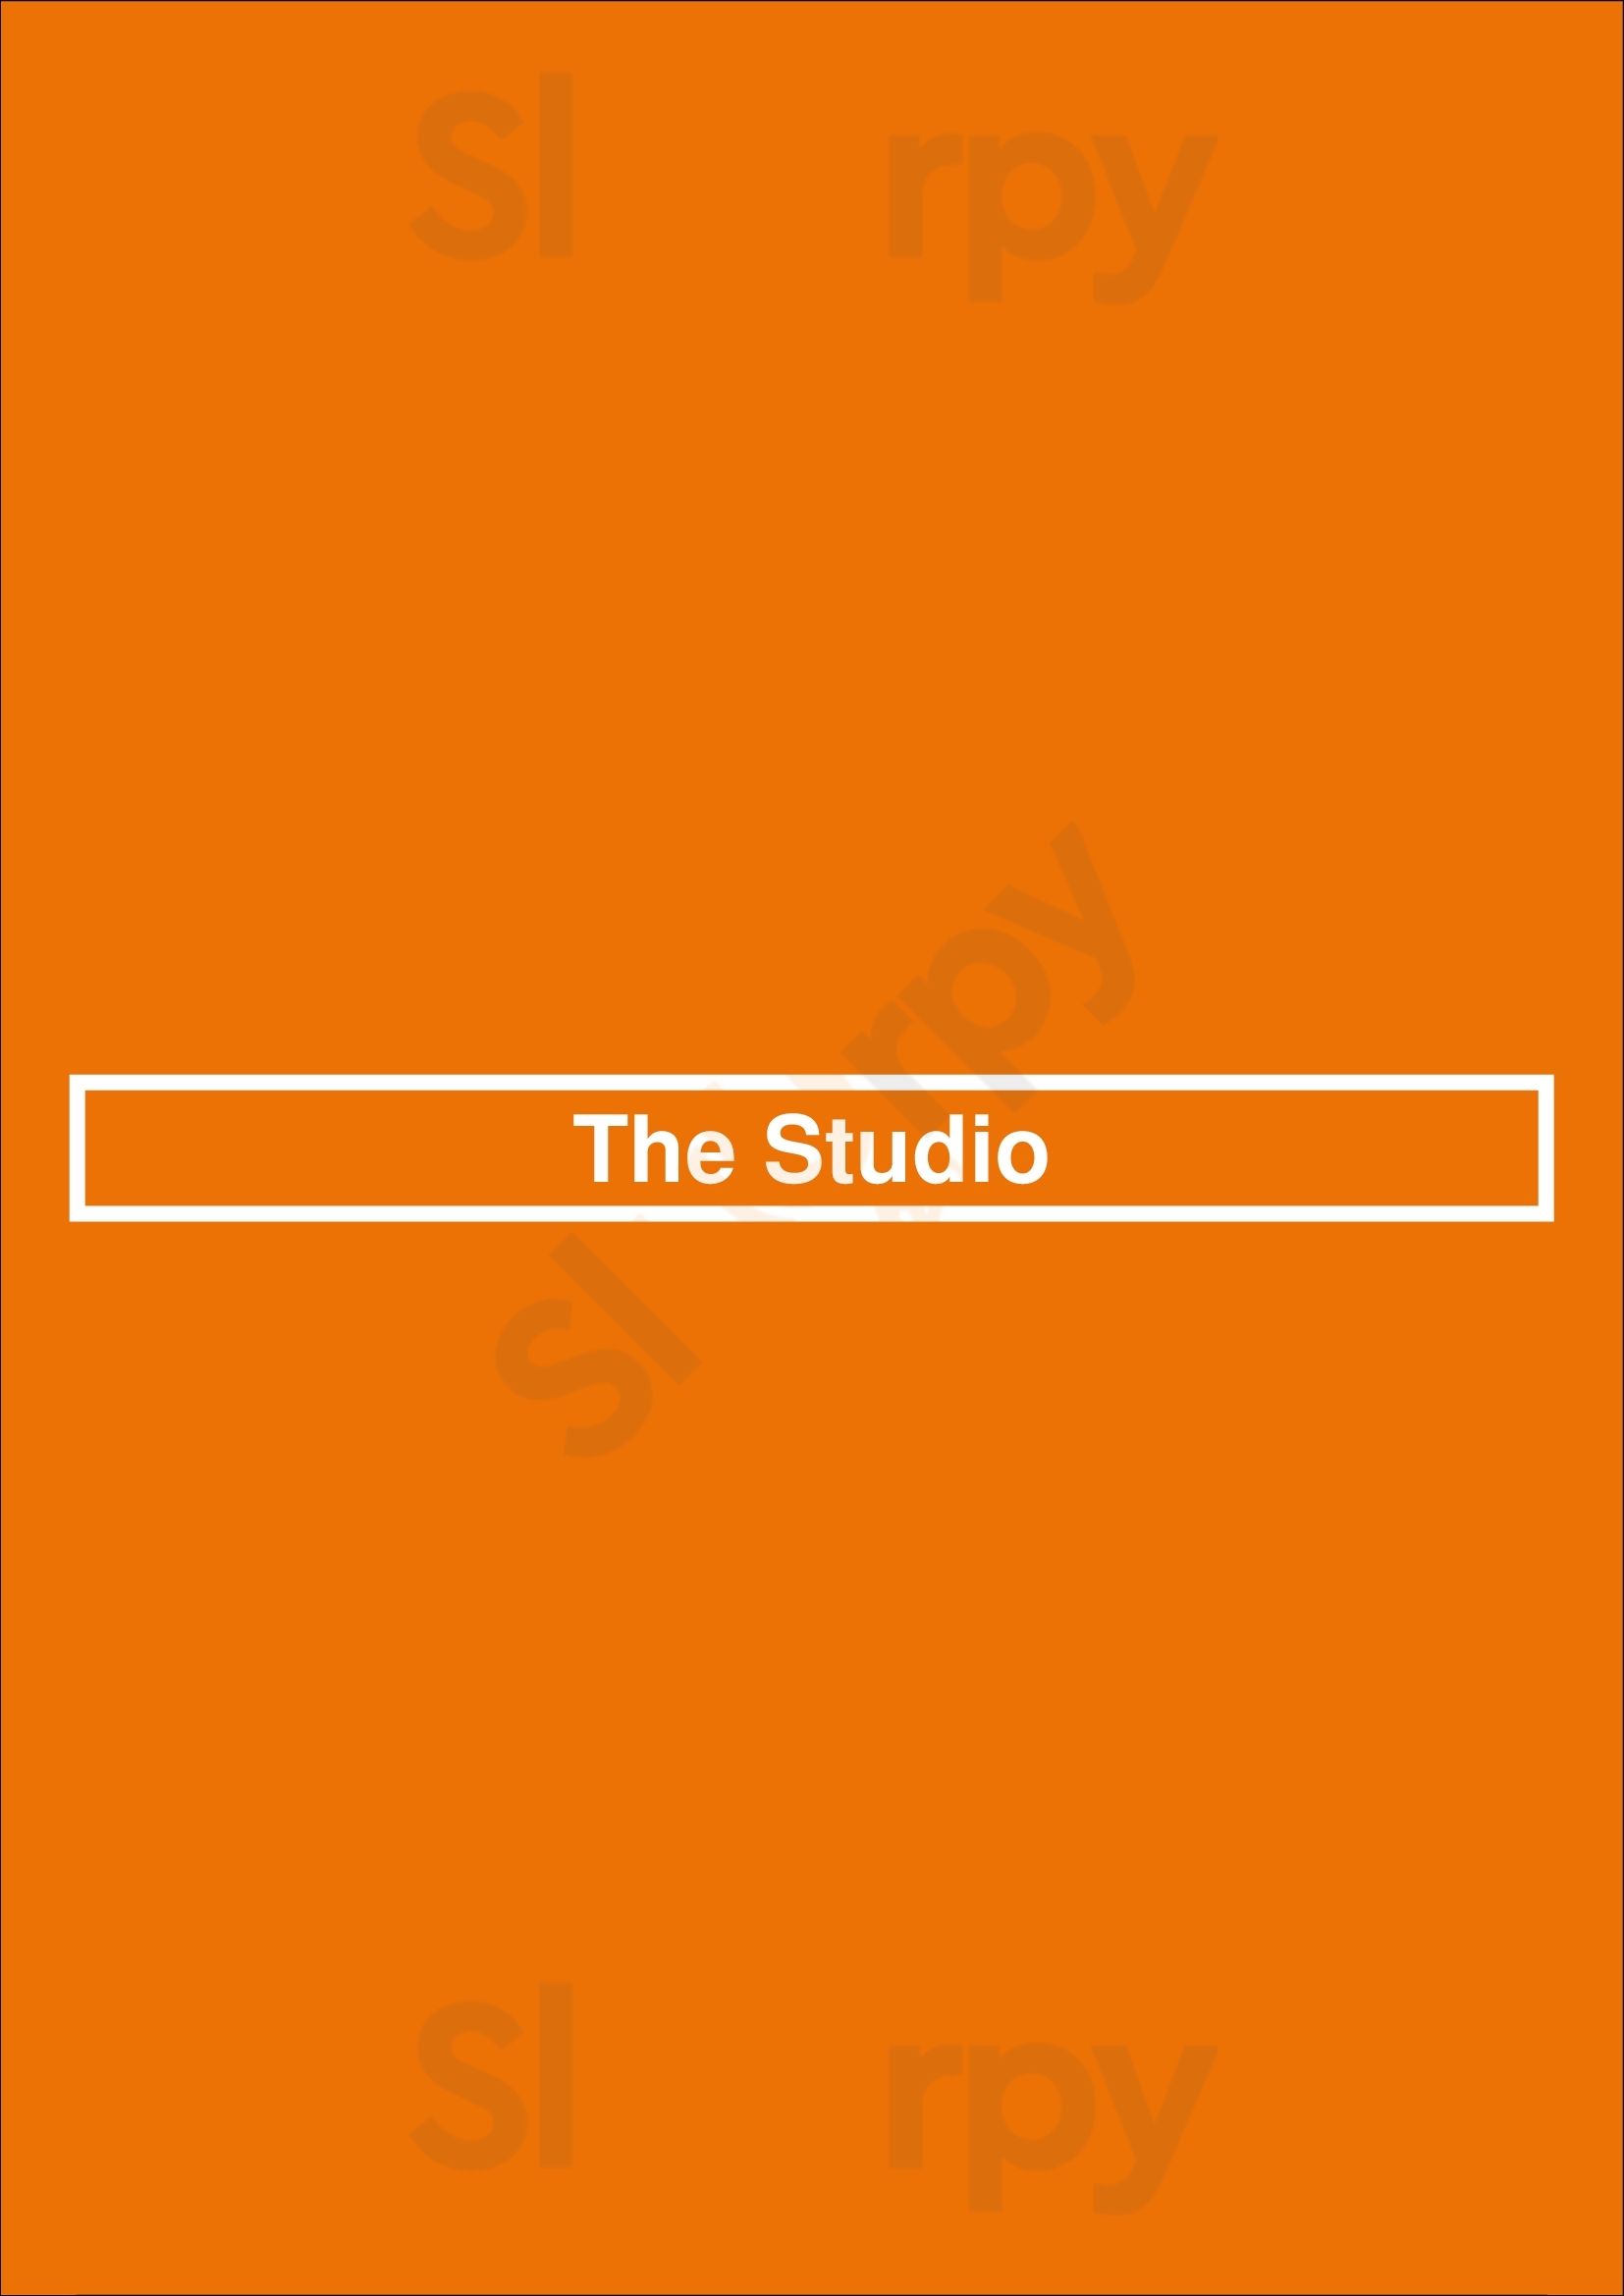 The Studio Hilton Head Menu - 1